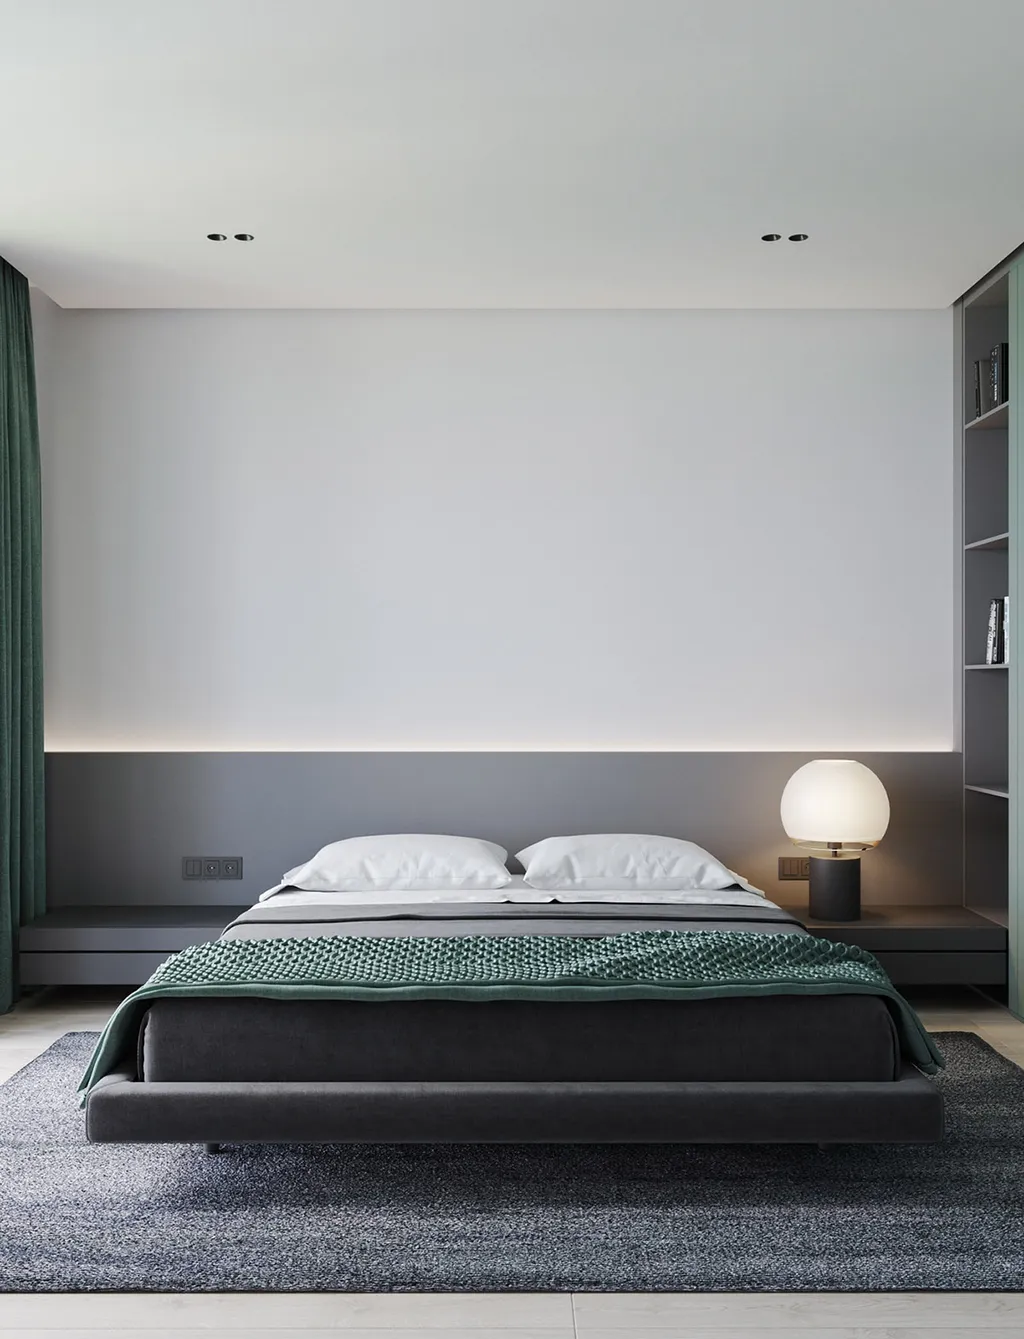 Mẫu thiết kế phòng ngủ tối giản cho căn hộ chung cư 70m2